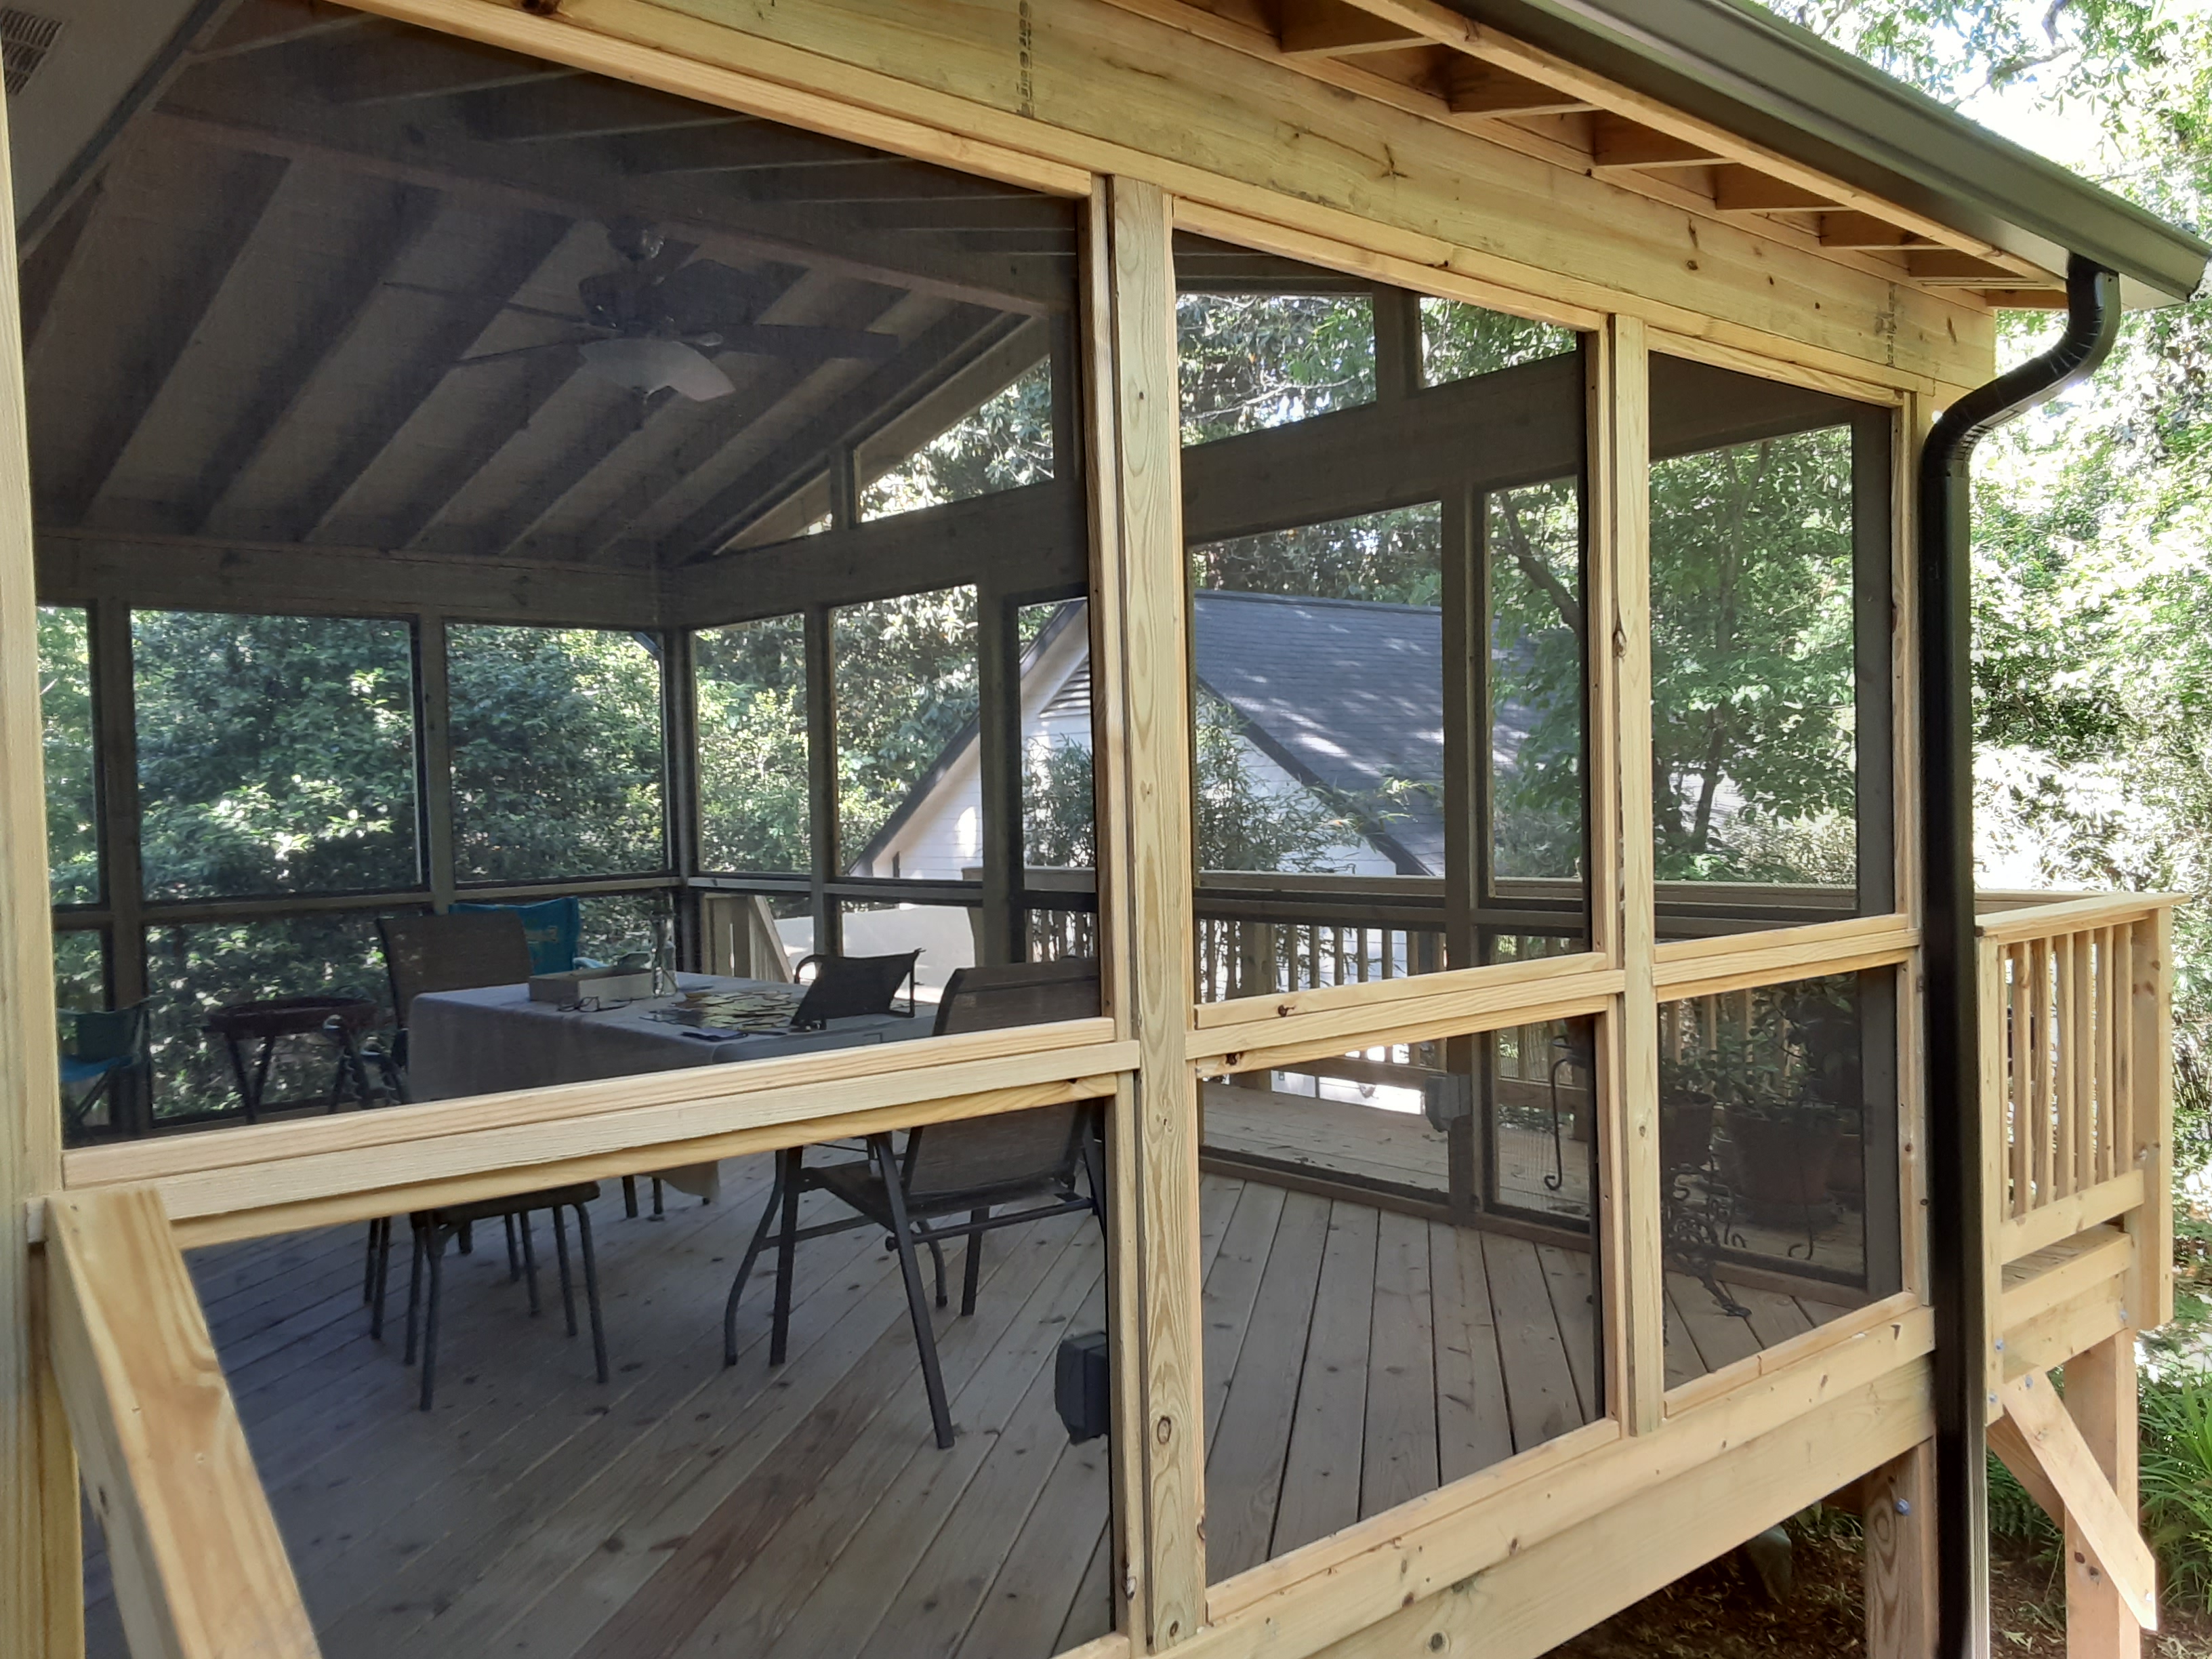 Historic Macon GA screened porch and deck design